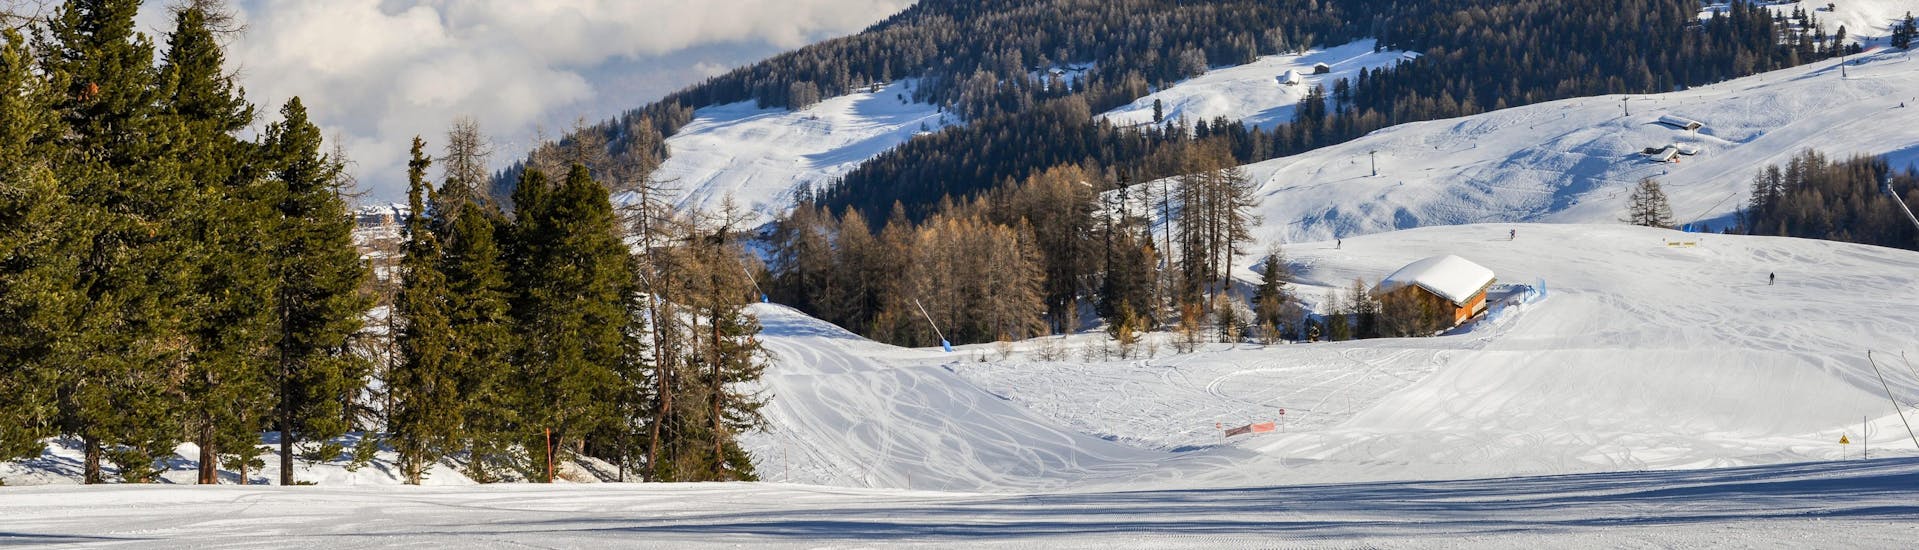 Parte delle piste di Pila, in Val d'Aosta, dove è possibile prenotare lezioni di sci.